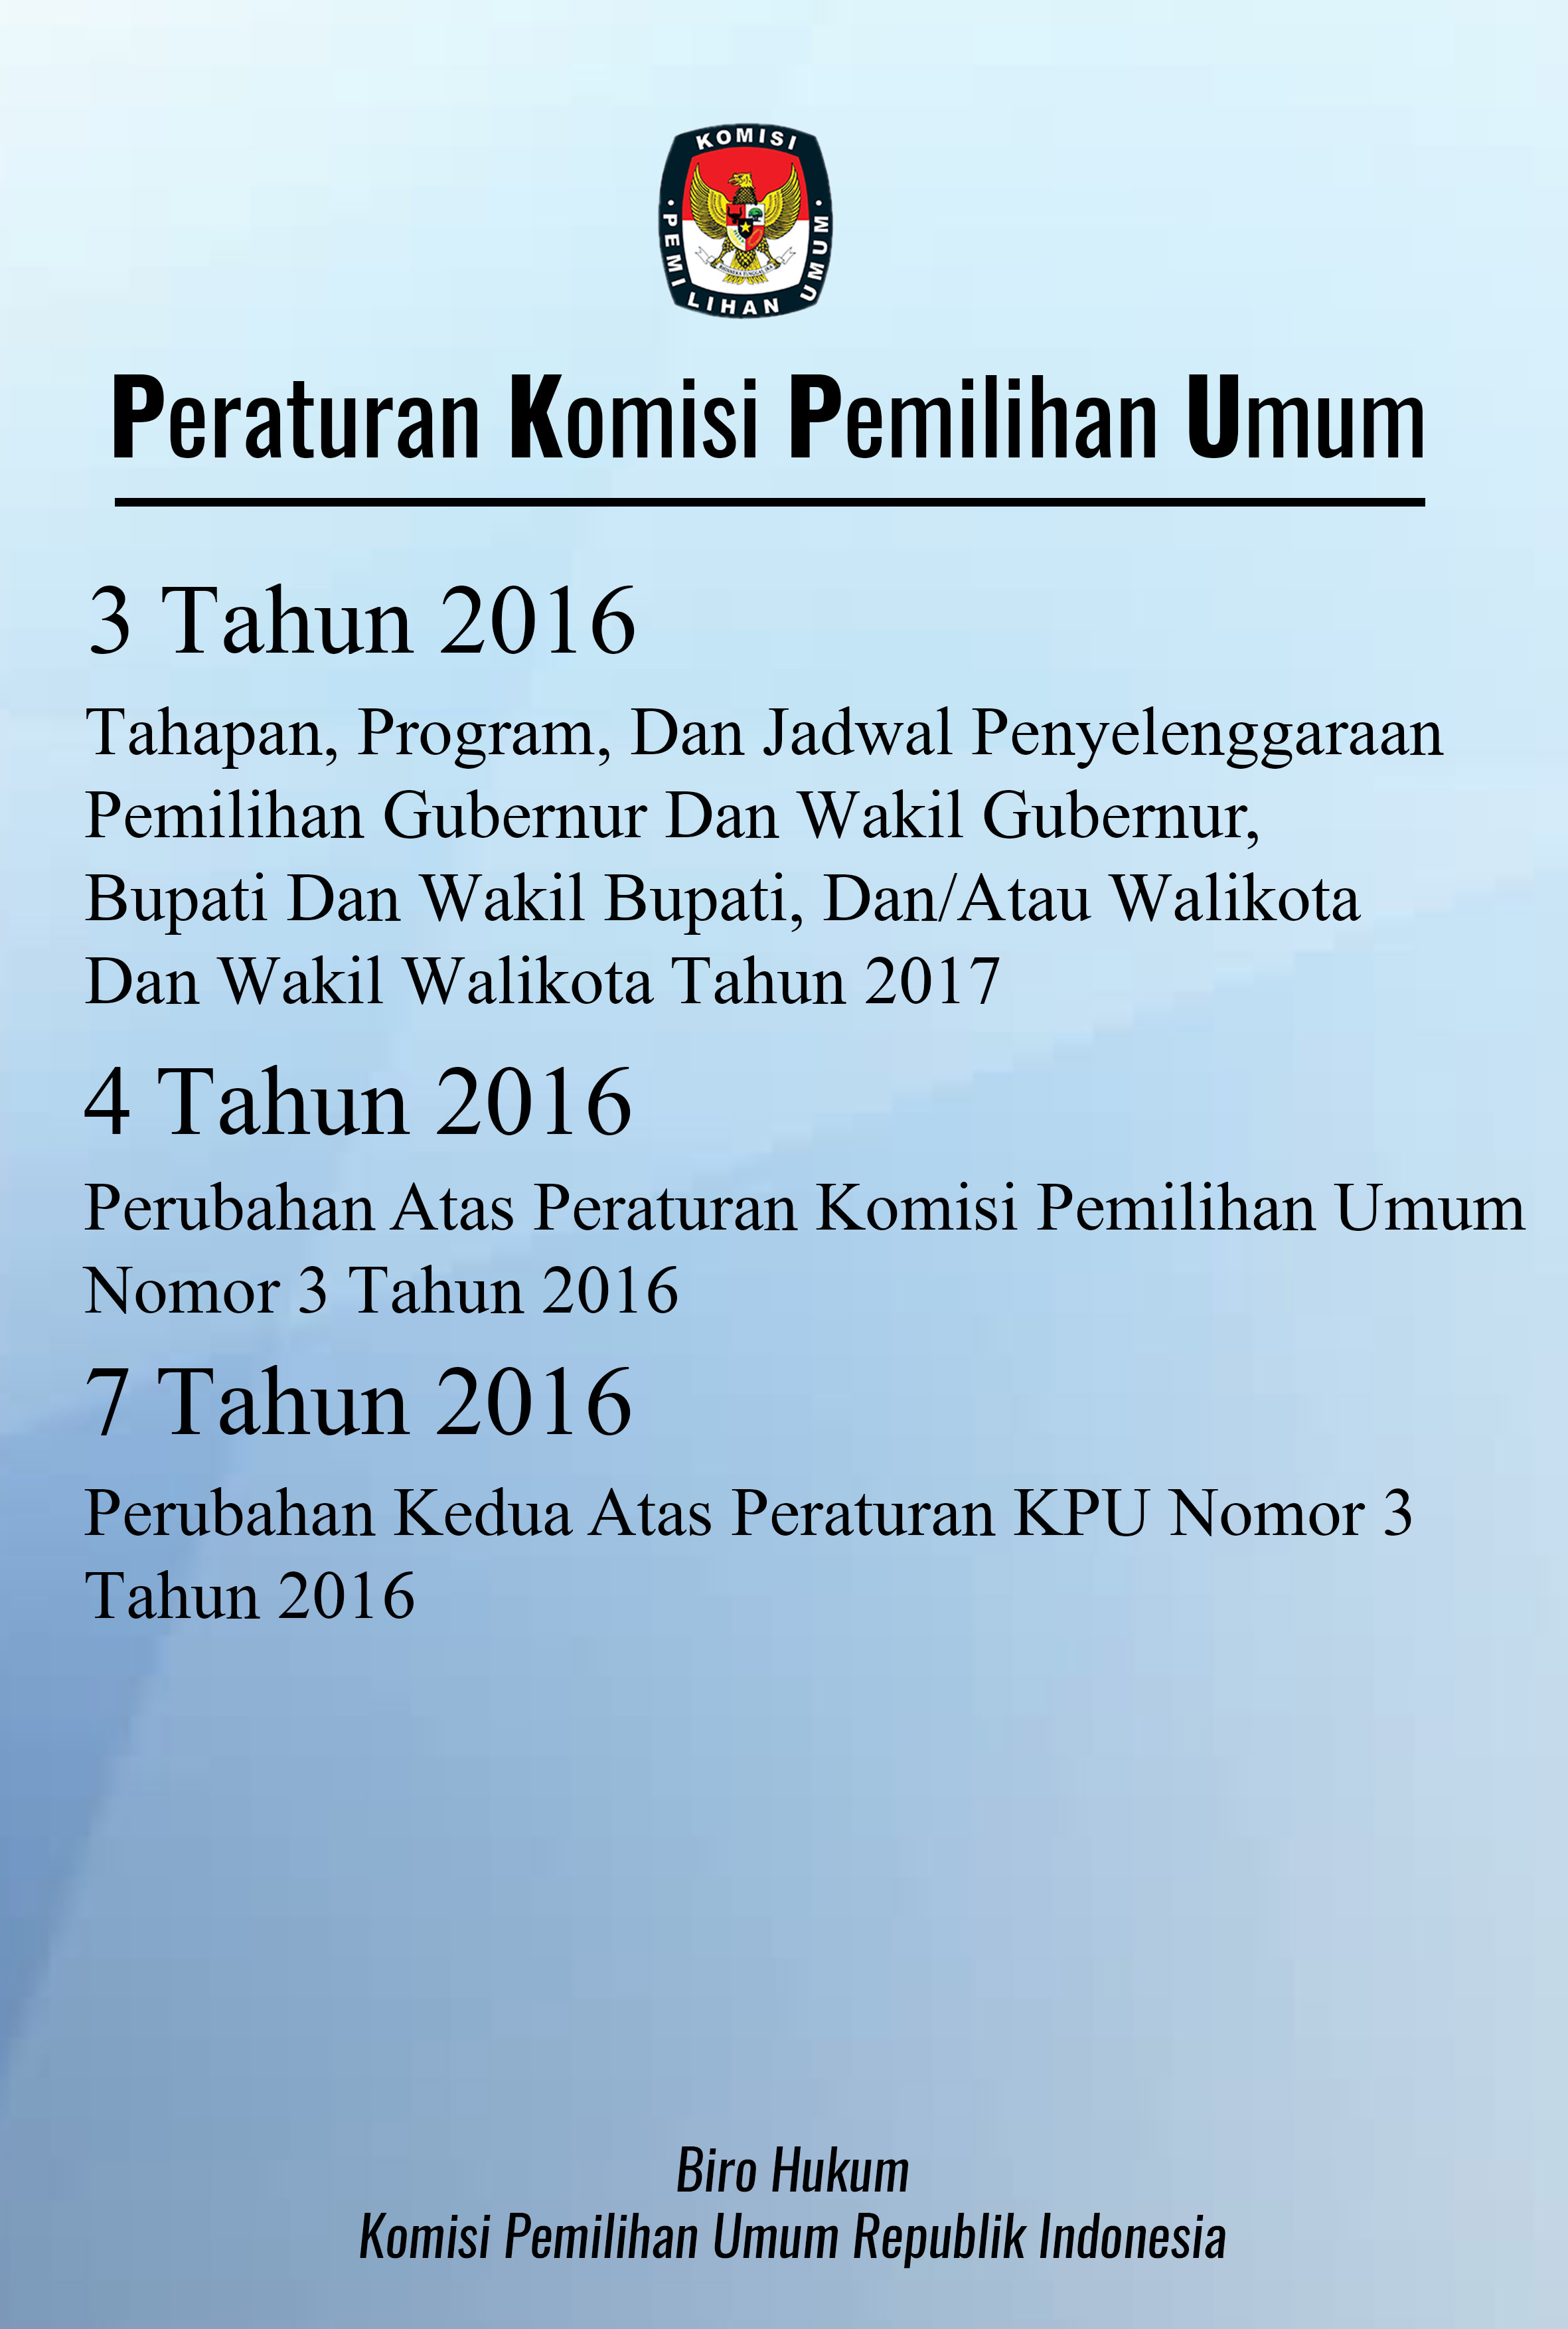 Peraturan komisi pemilihan umum nomor 3 tahun 2016, 4 tahun 2016, dan 7 tahun 2016